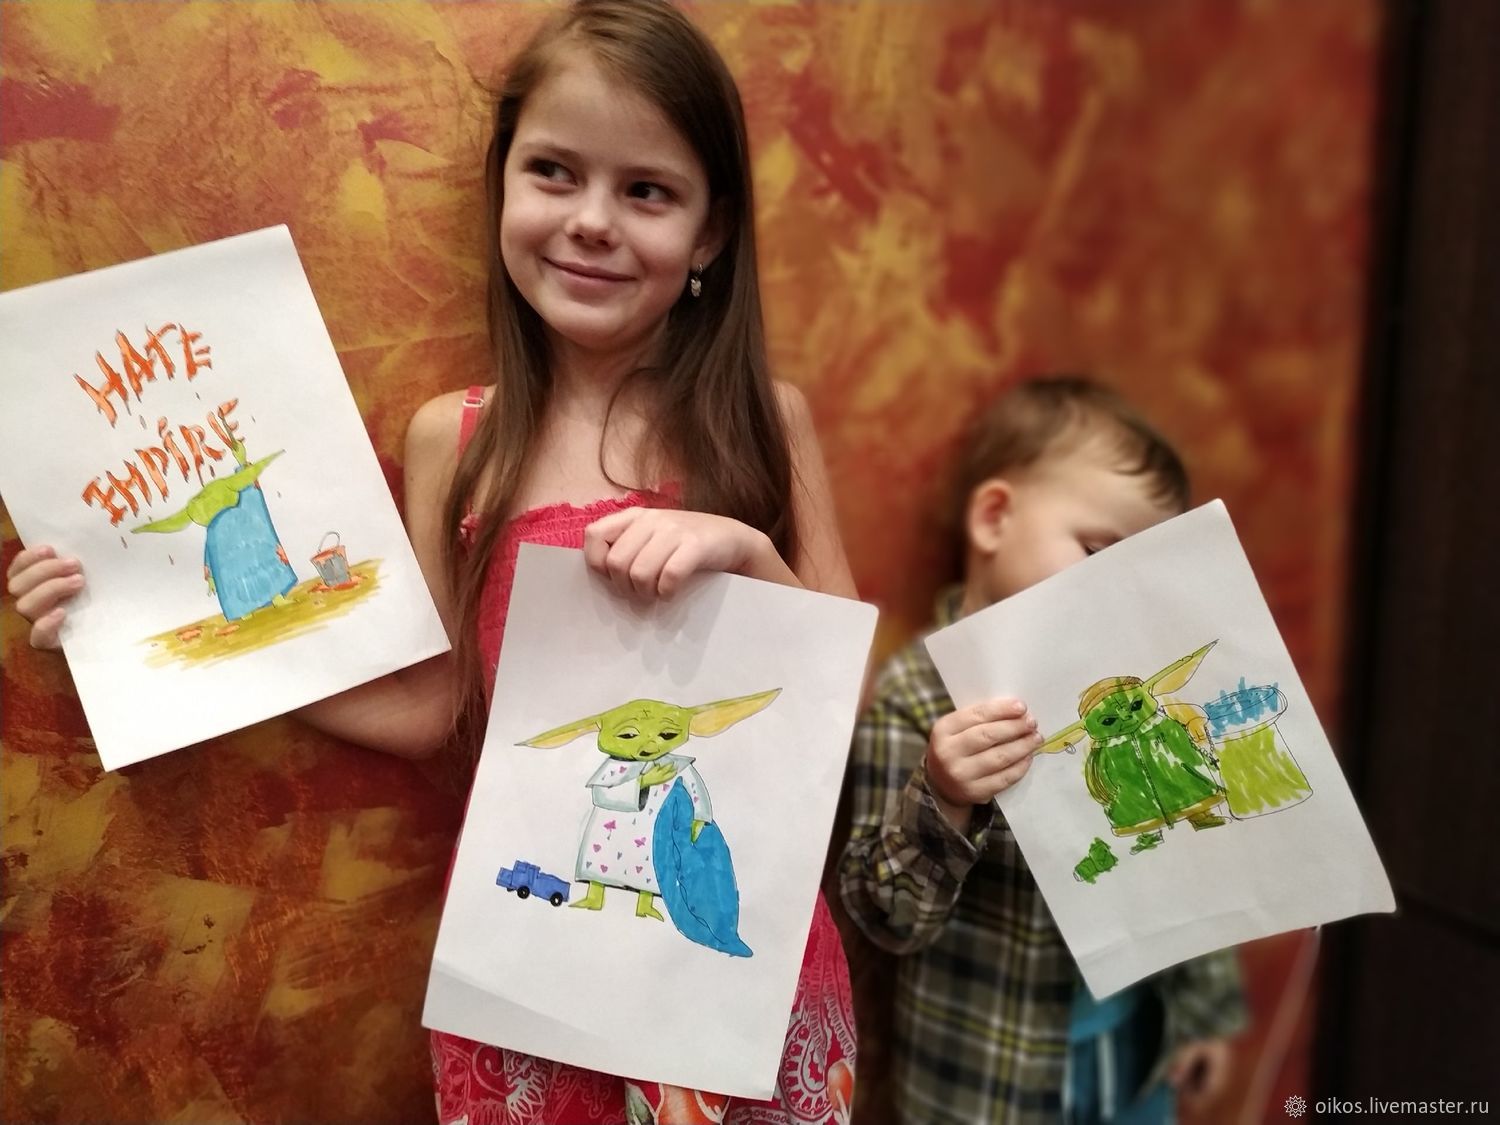 Раскраски для детей - бесплатно распечатать, скачать, раскрасить онлайн